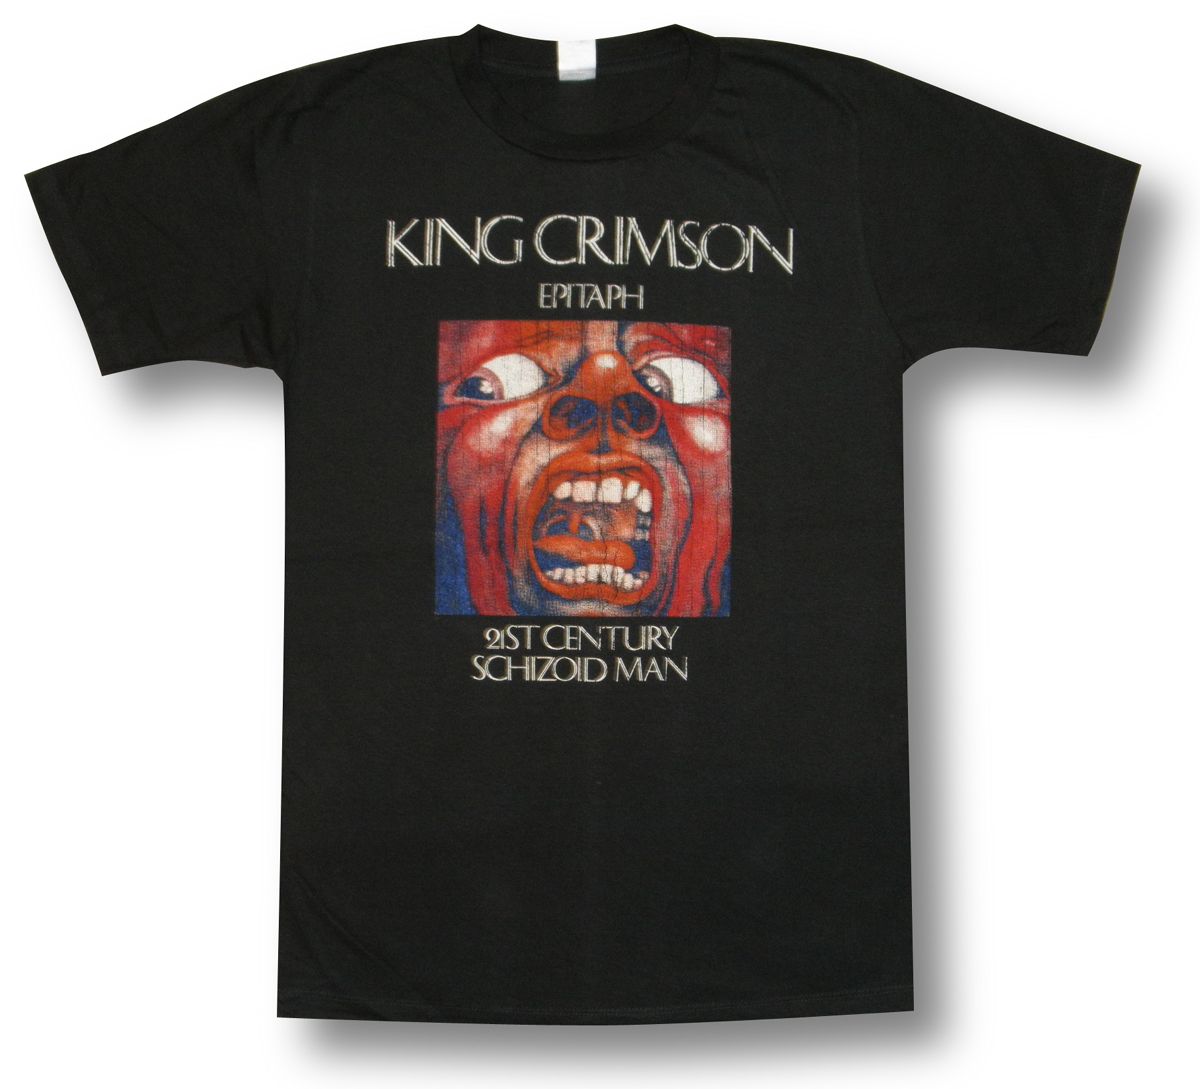  KING CRIMSON キング・クリムゾン EPITAPH 21ST CENTURY SCHIZOID MAN ロックTシャツ バンドTシャツ メンズ チャコール グレー bny